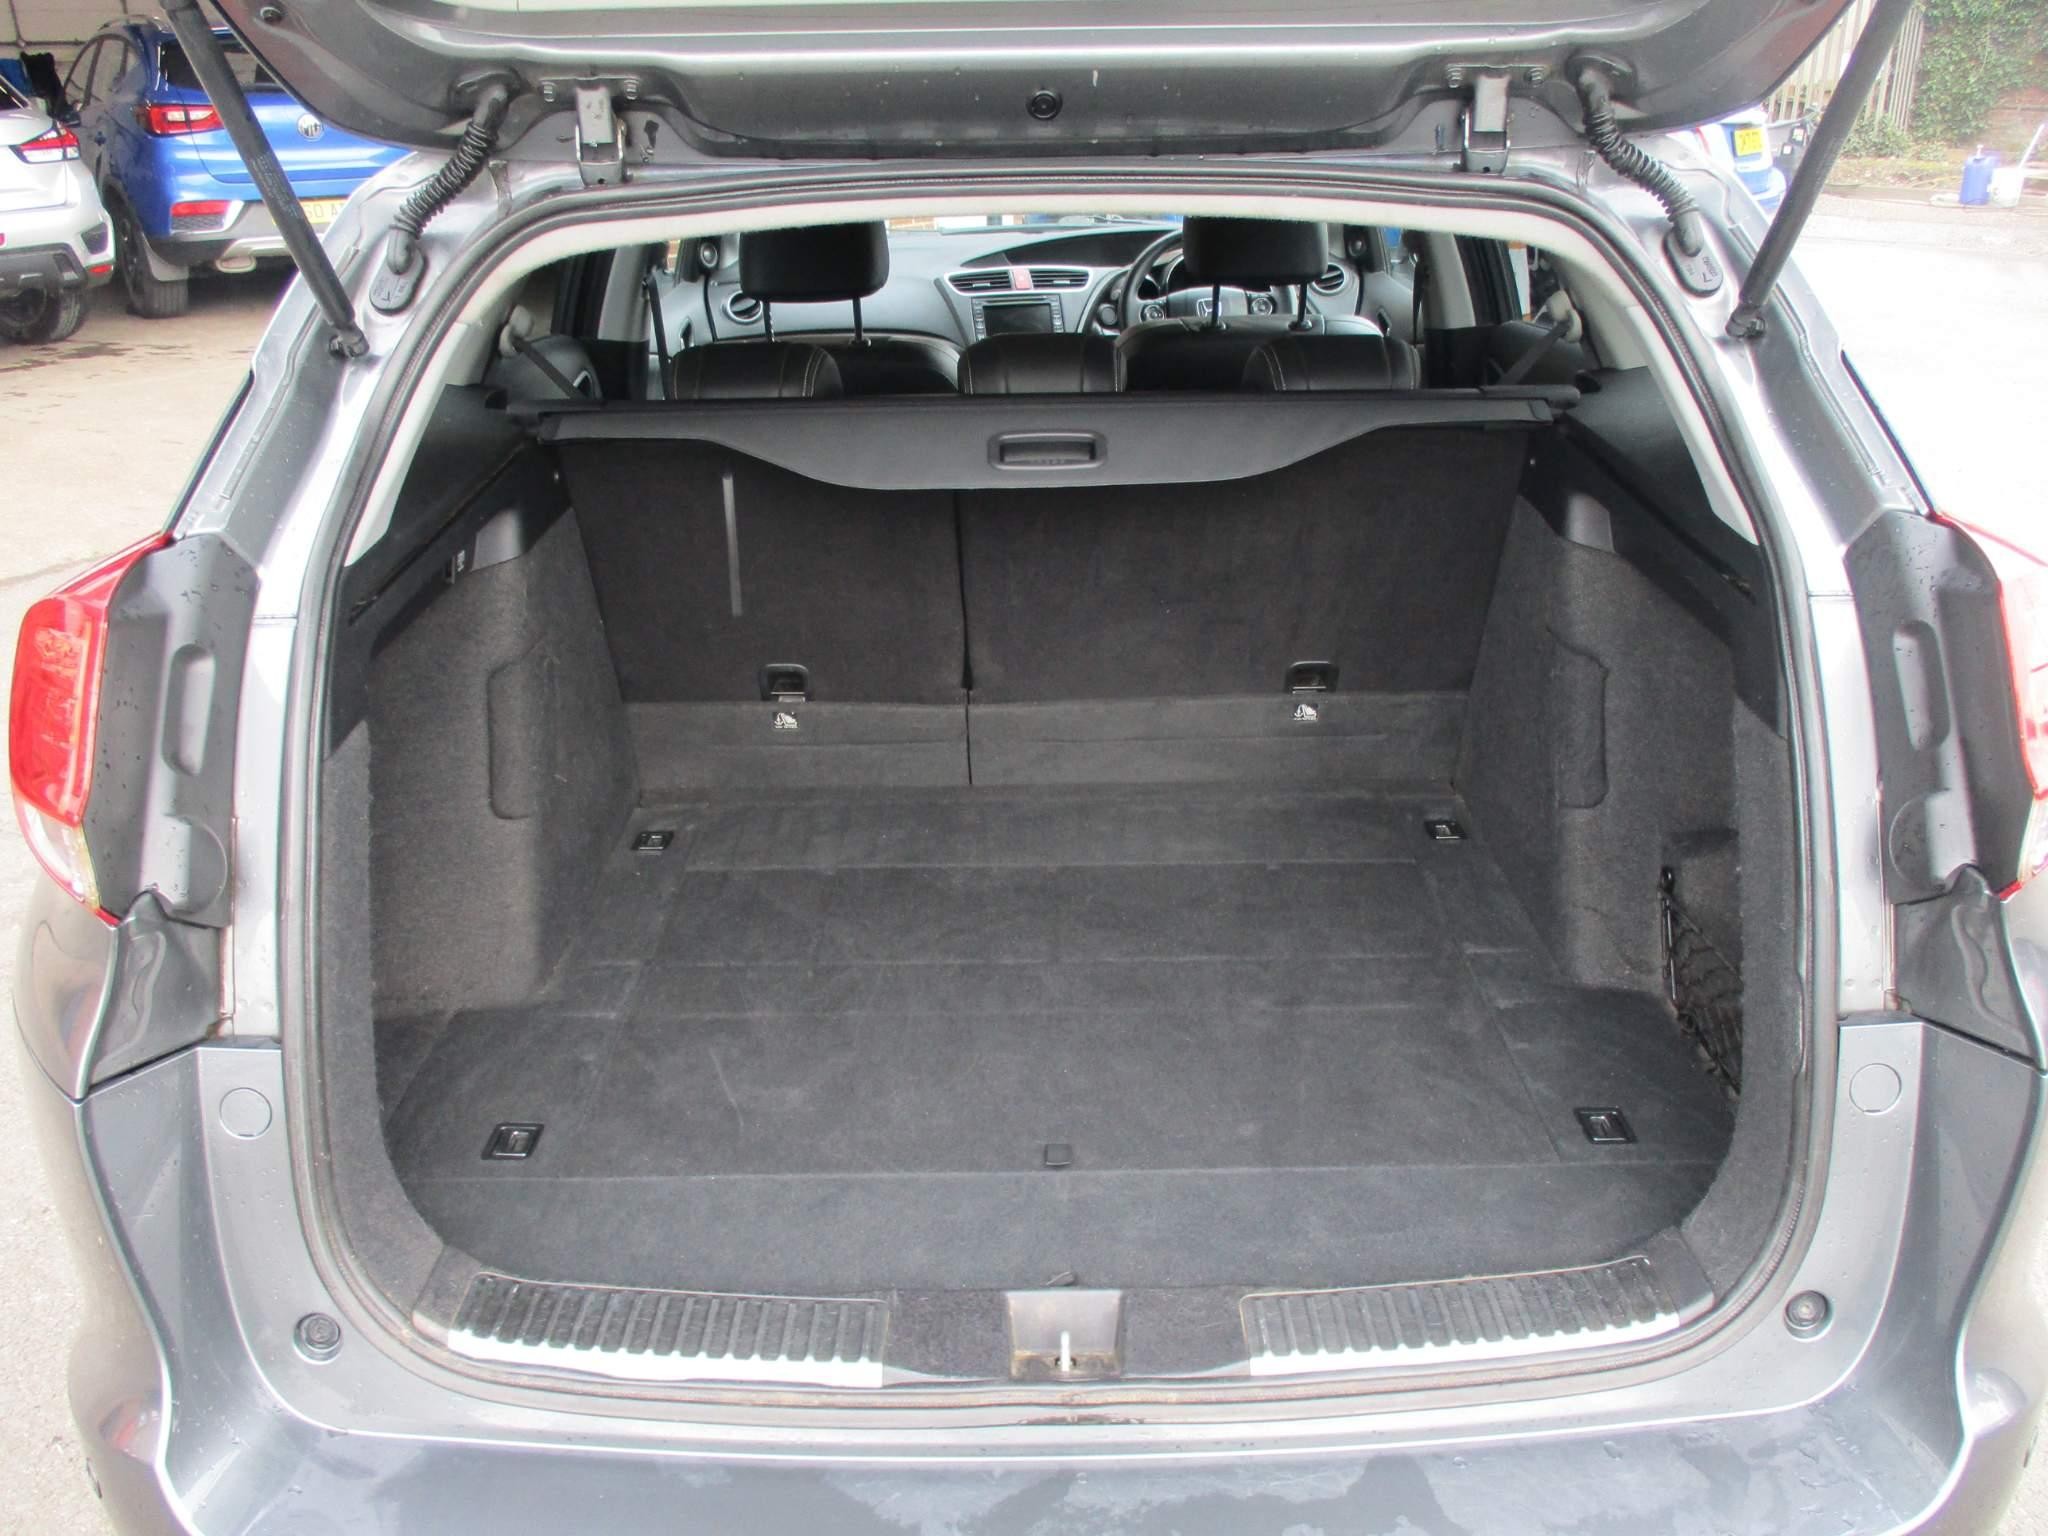 Honda Civic 1.6 i-DTEC SR Tourer 5dr Diesel Manual Euro 5 (s/s) (120 ps) (FY64MMJ) image 8